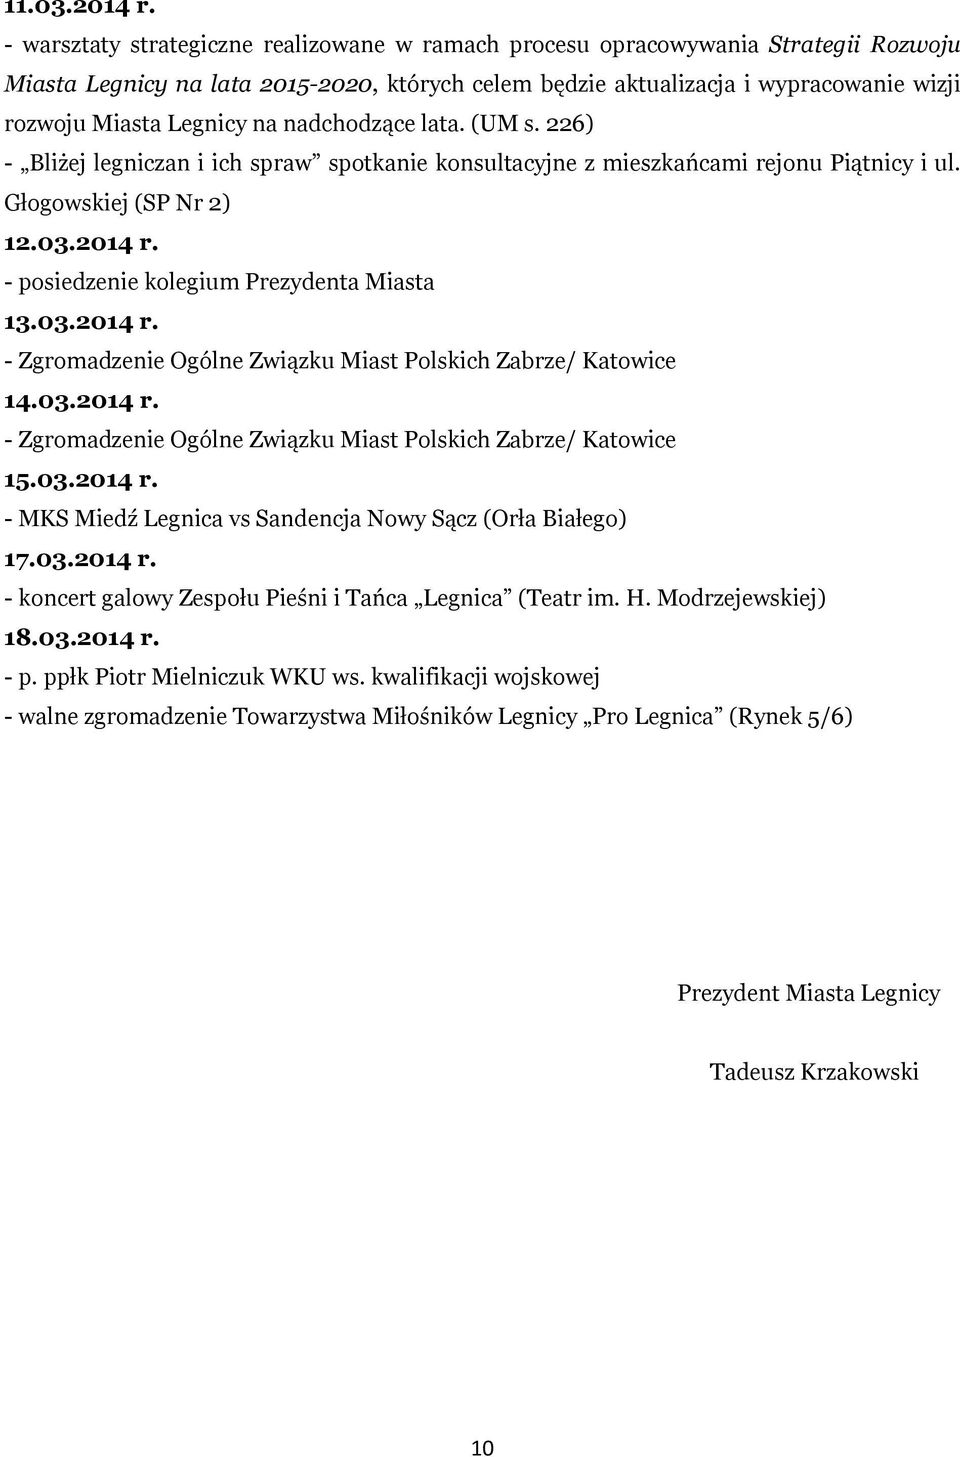 na nadchodzące lata. (UM s. 226) - Bliżej legniczan i ich spraw spotkanie konsultacyjne z mieszkańcami rejonu Piątnicy i ul. Głogowskiej (SP Nr 2) 12.03.2014 r.